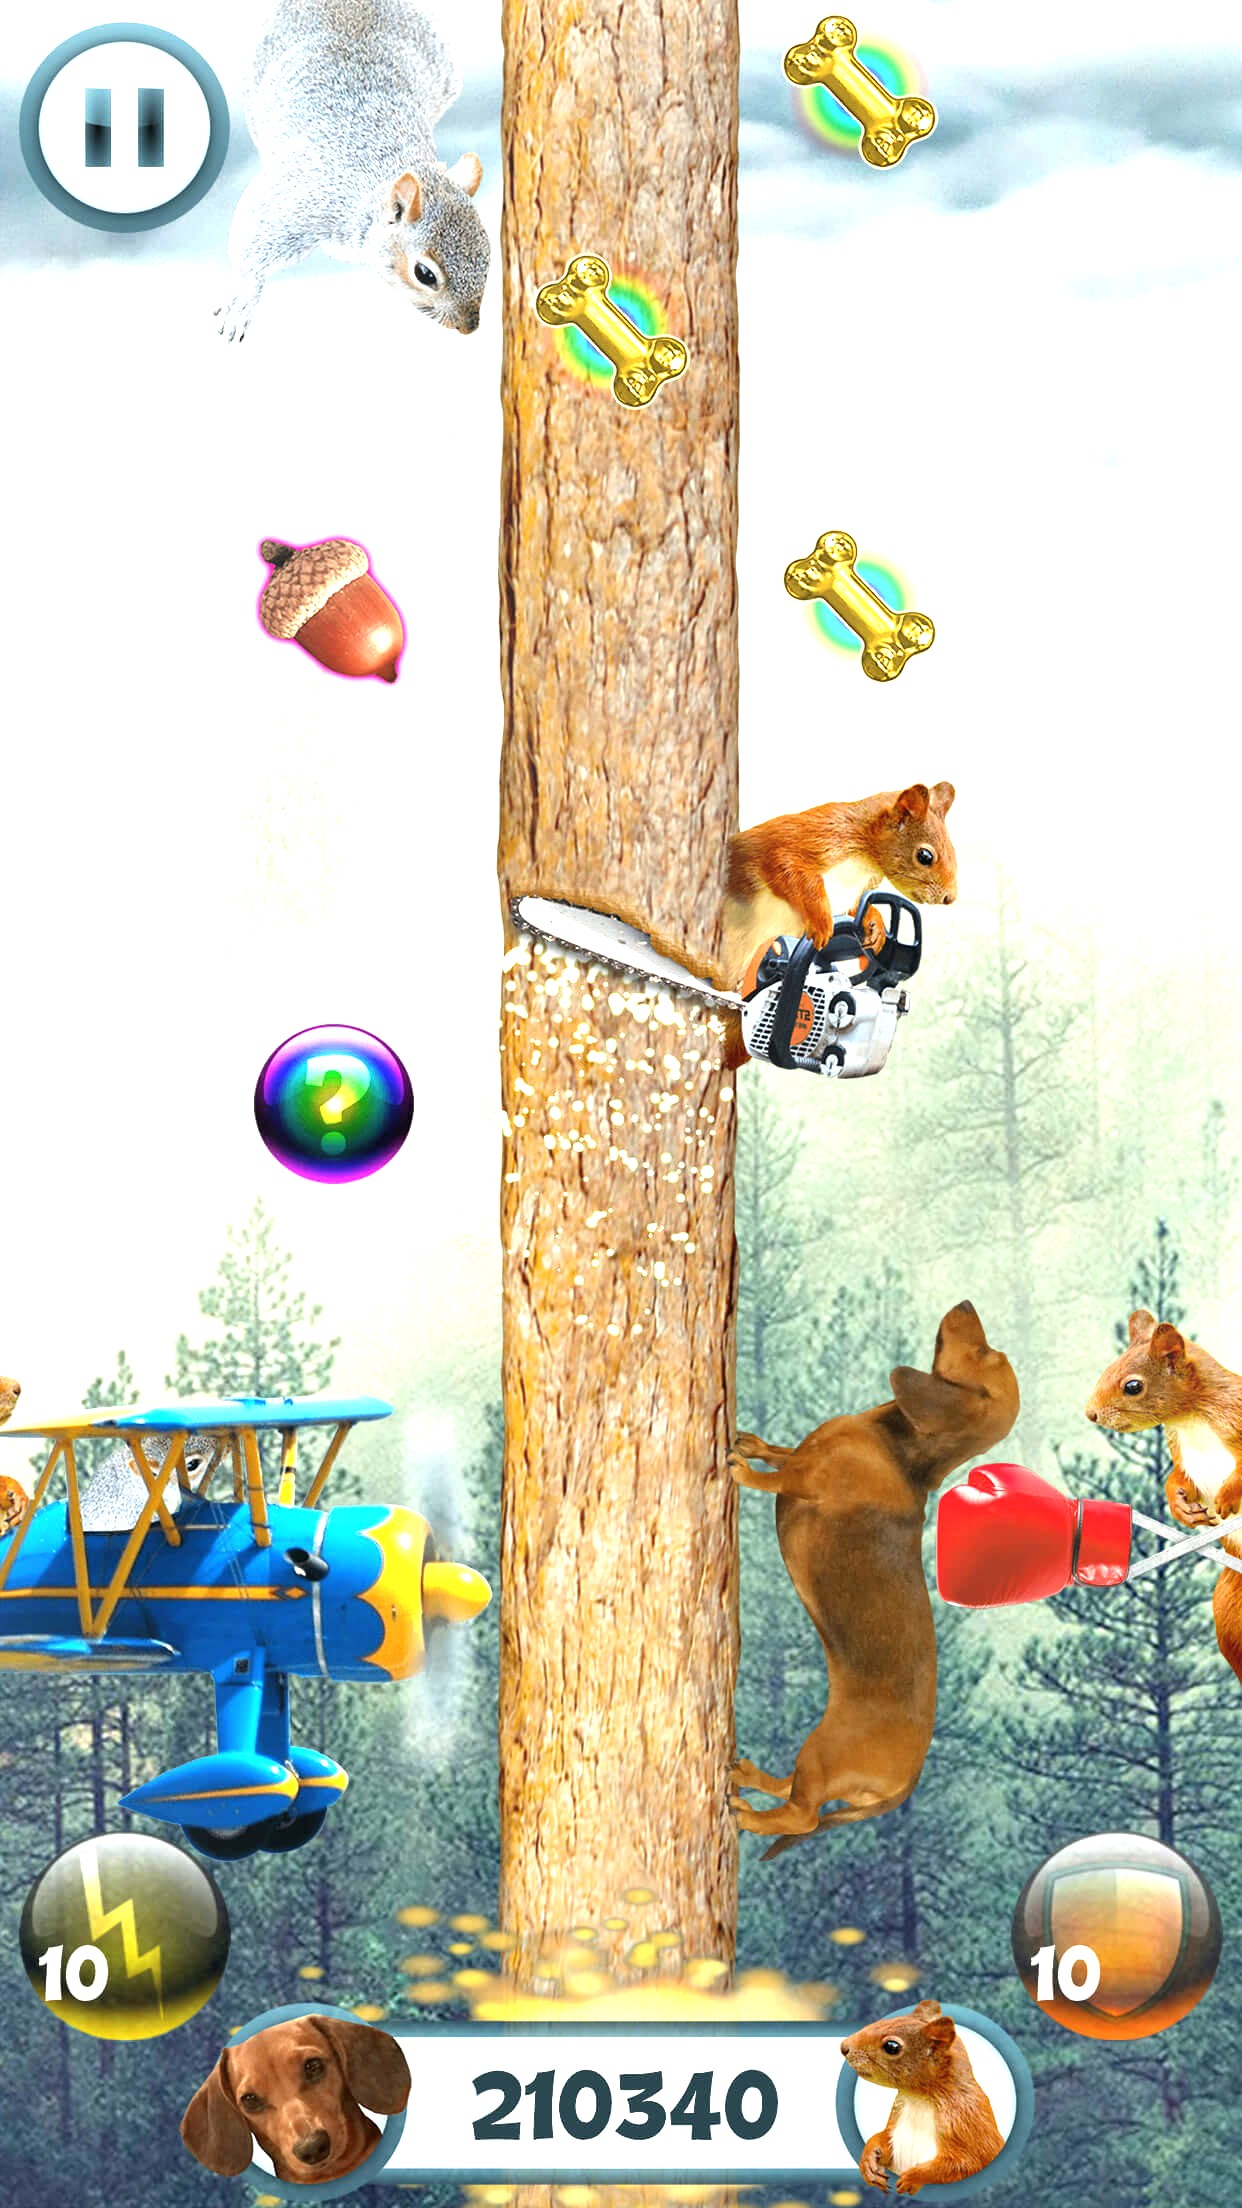 Fandomodo's Wild Wiener mobile game features a dachshund dodging squirrels.